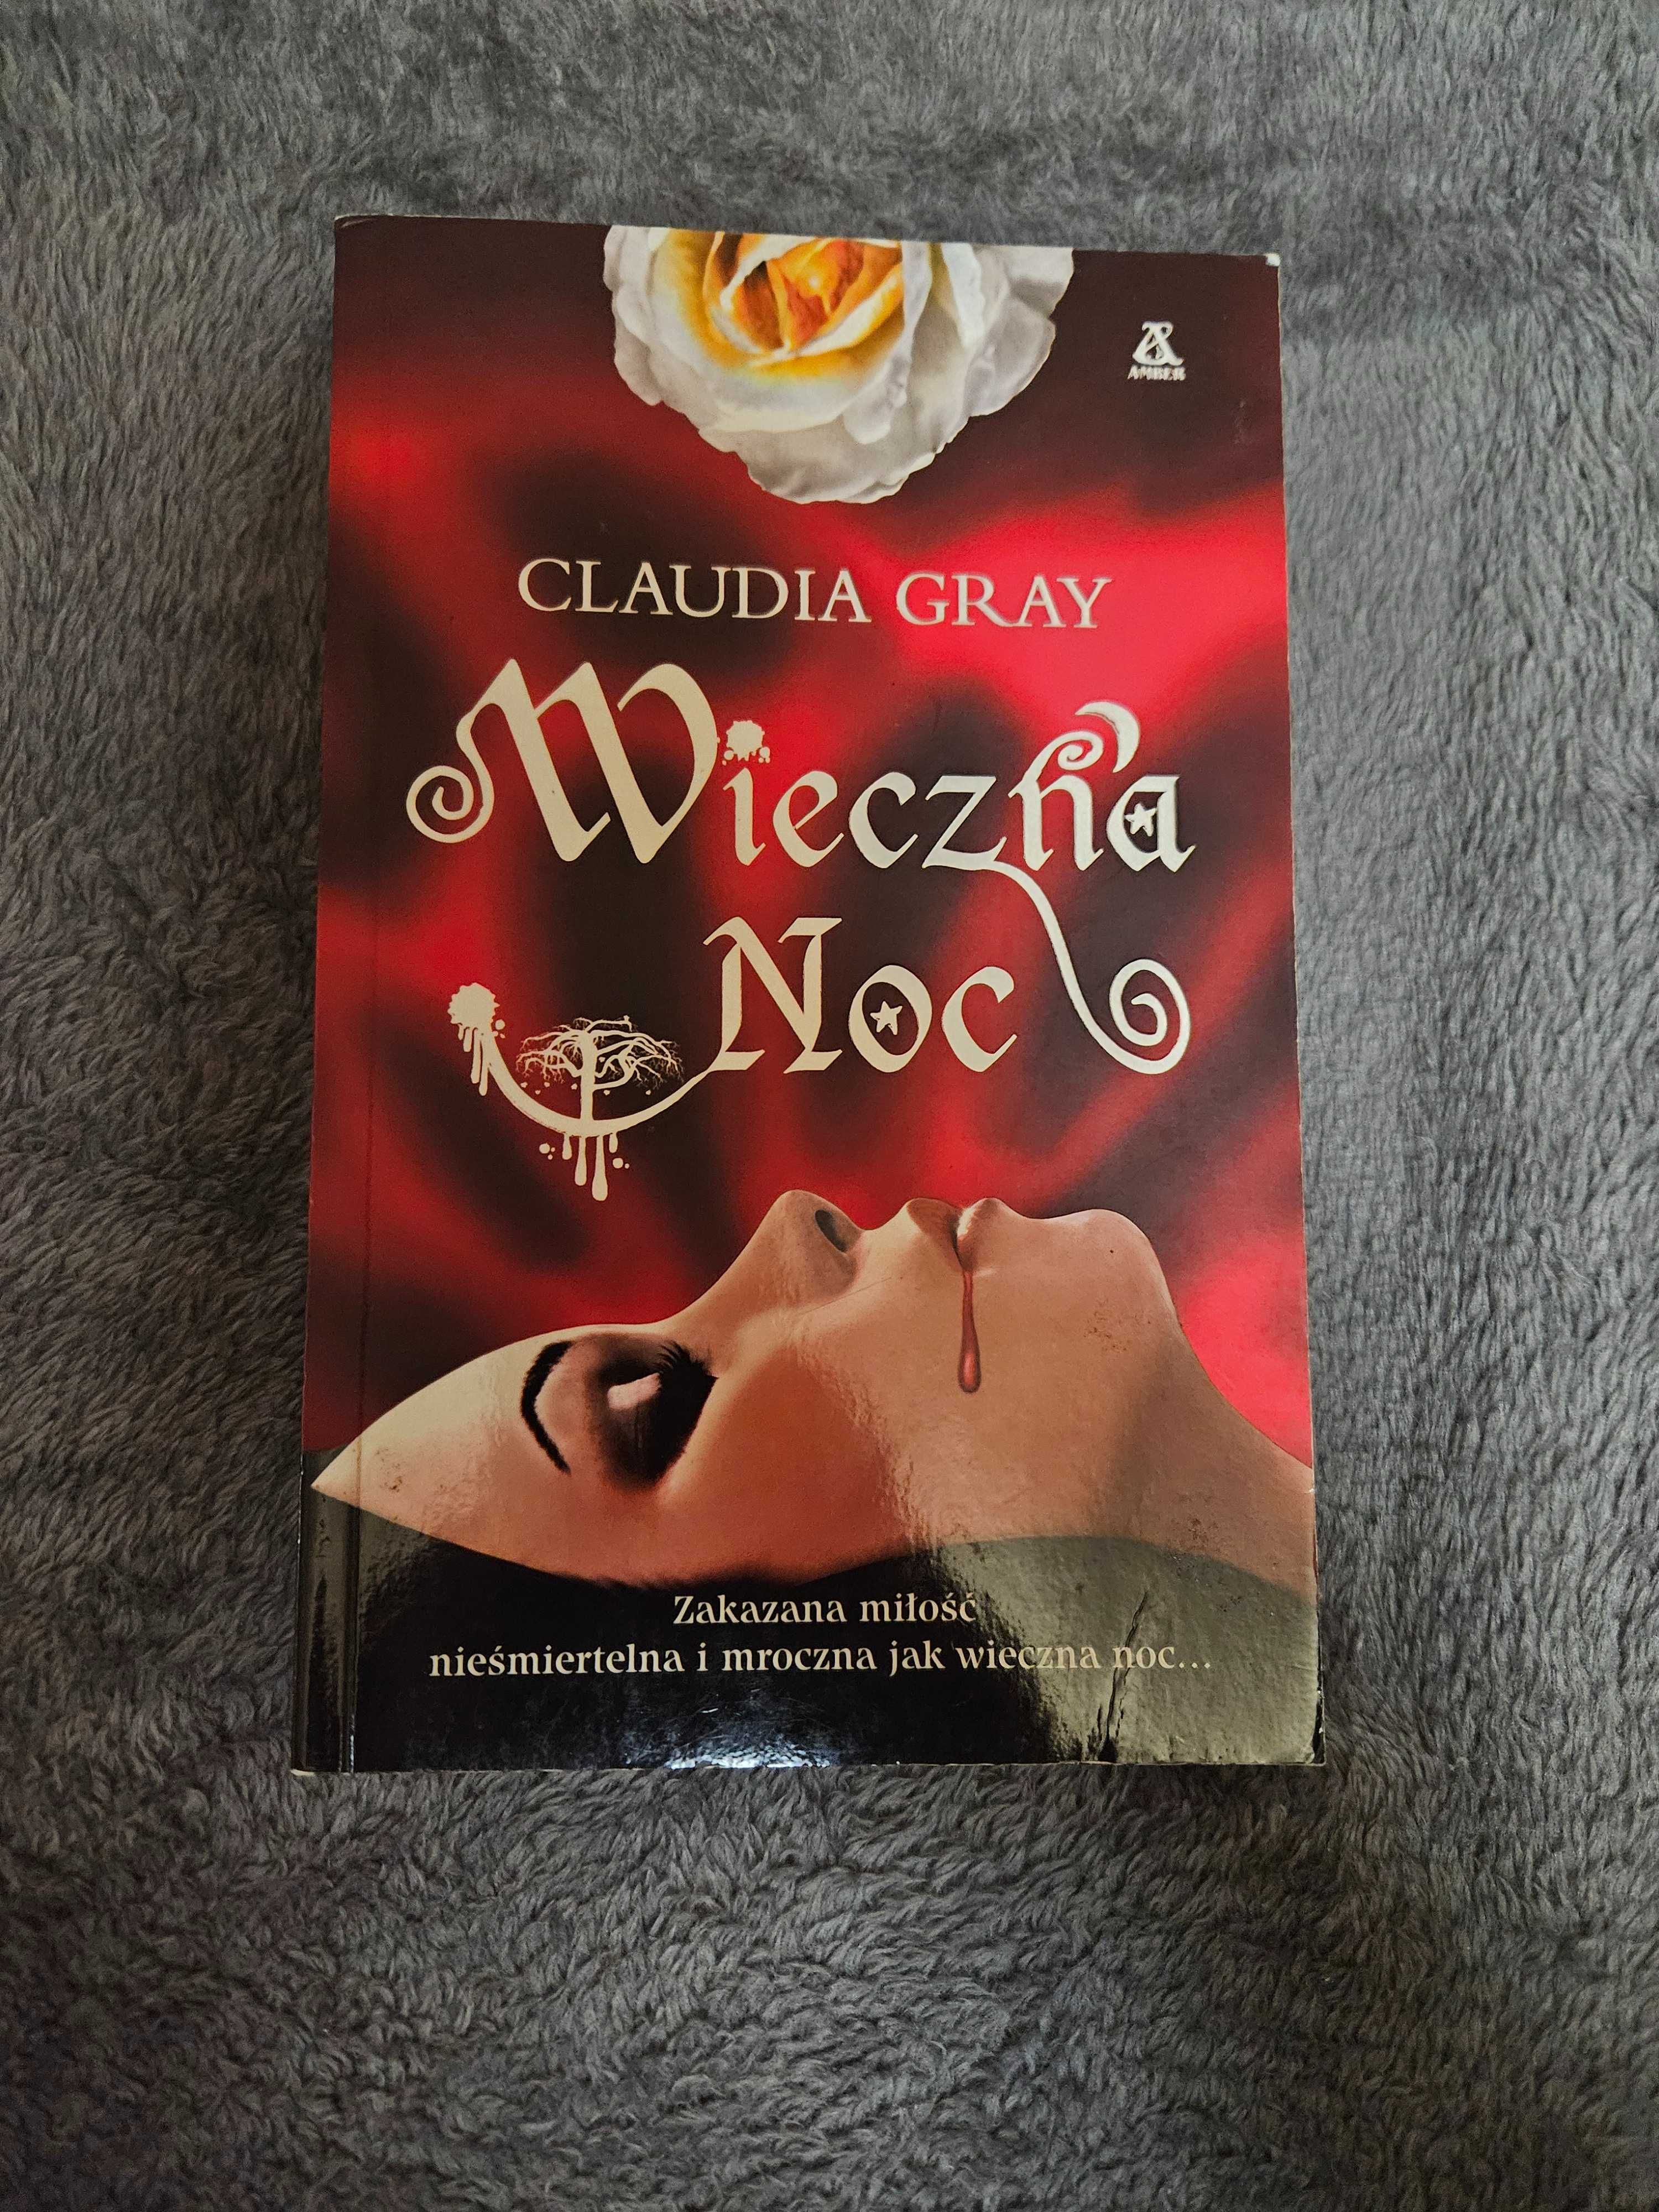 Książka "Wieczna noc" Claudia Graya